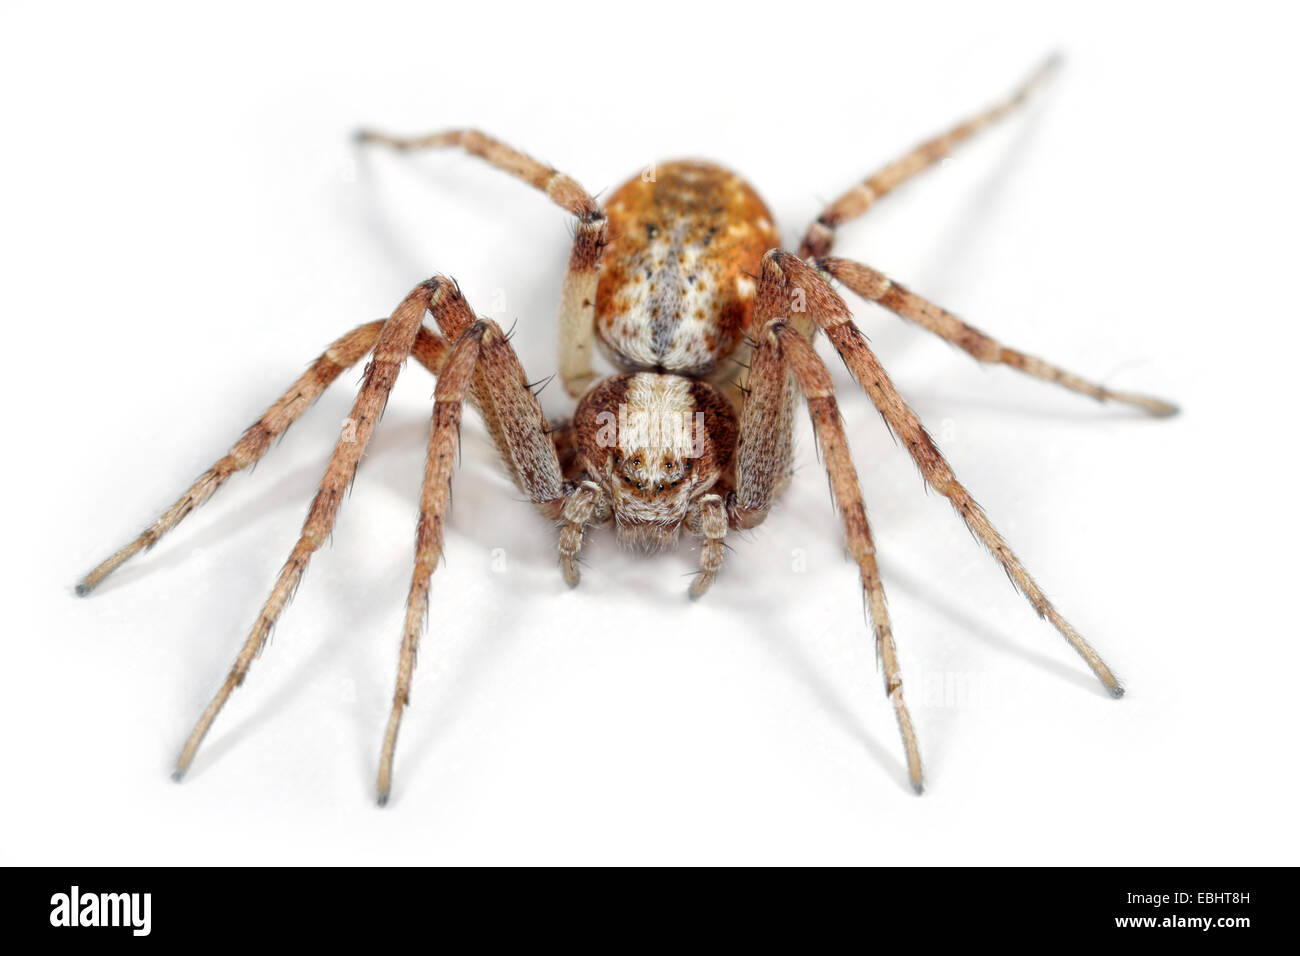 Femmina cespitum Philodromus spider su sfondo bianco. Famiglia Philodromidae, esecuzione di ragni granchio. Foto Stock